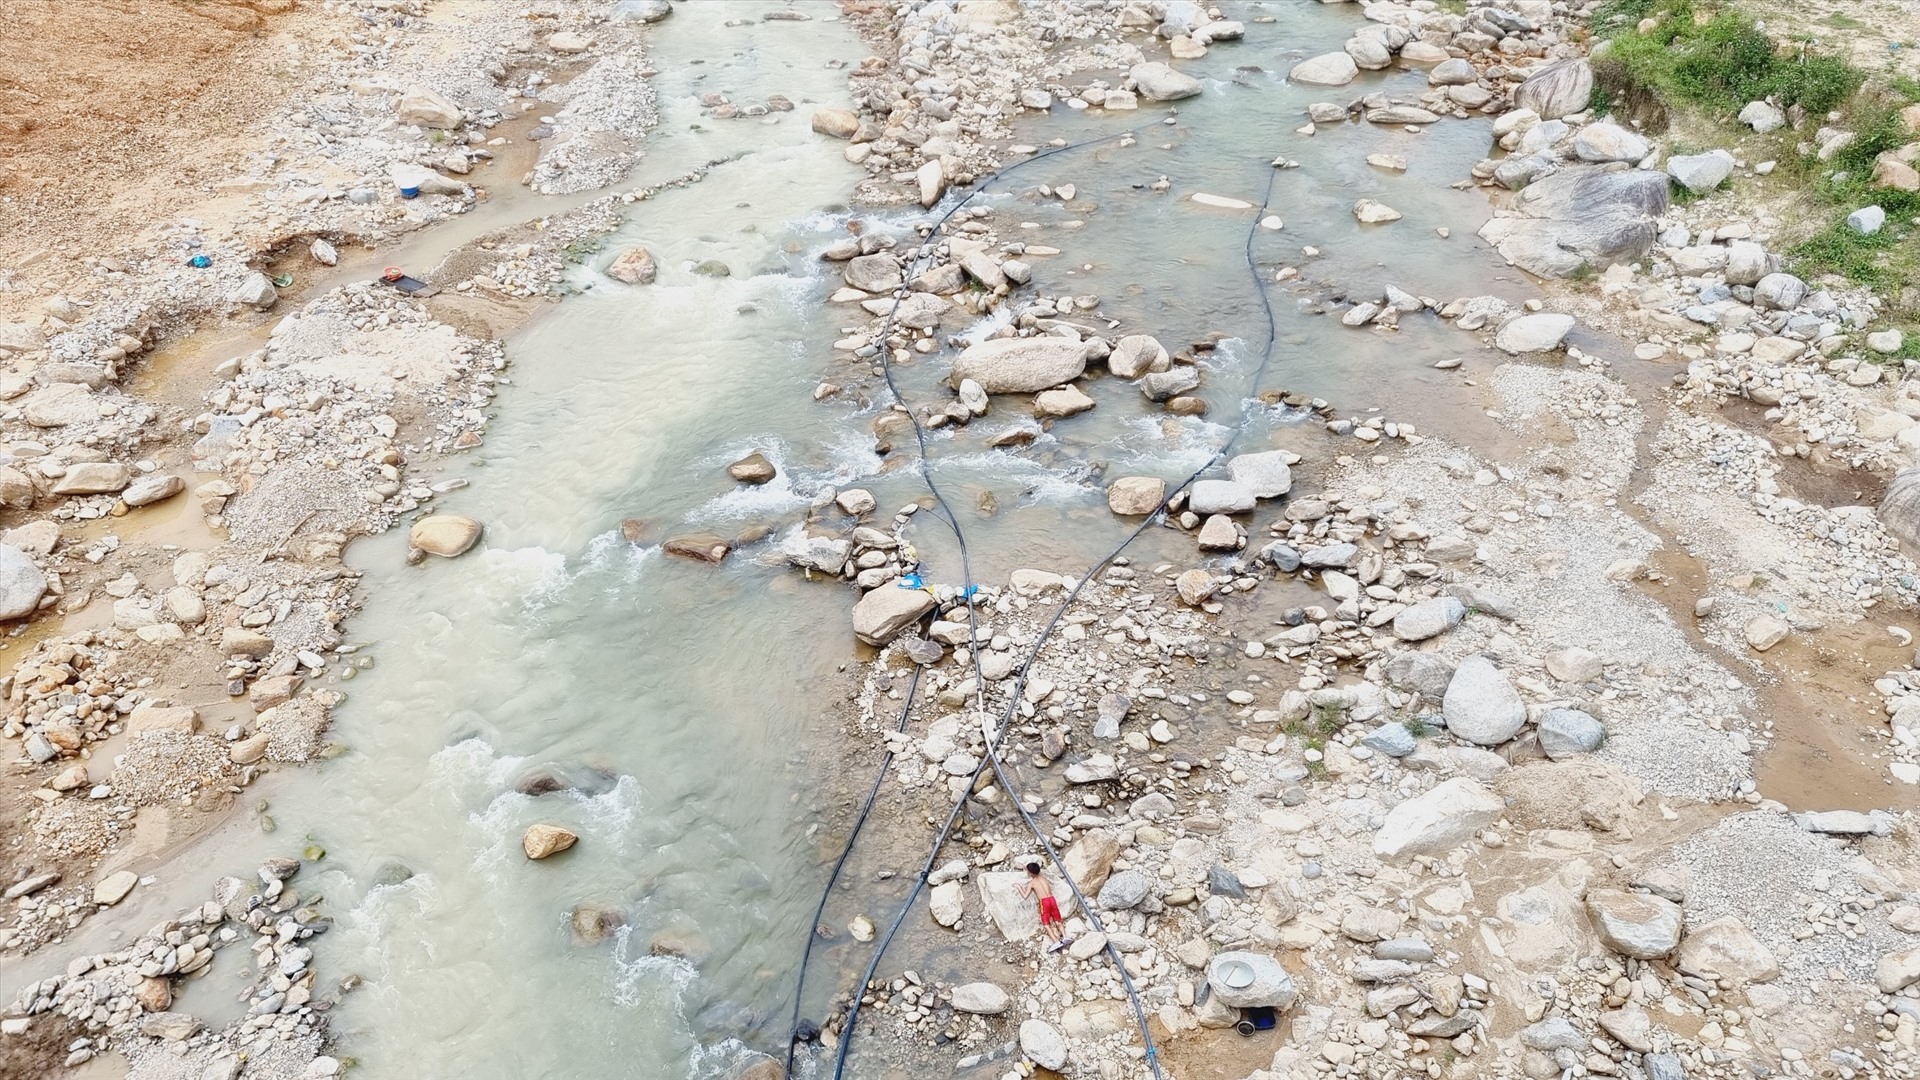 Phía hạ nguồn con suối Dak Mi, nhiều hộ dân vùng cao lo ngại khi tiếp xúc với nguồn nước thải từ mỏ vàng. Ảnh Hoàng Bin